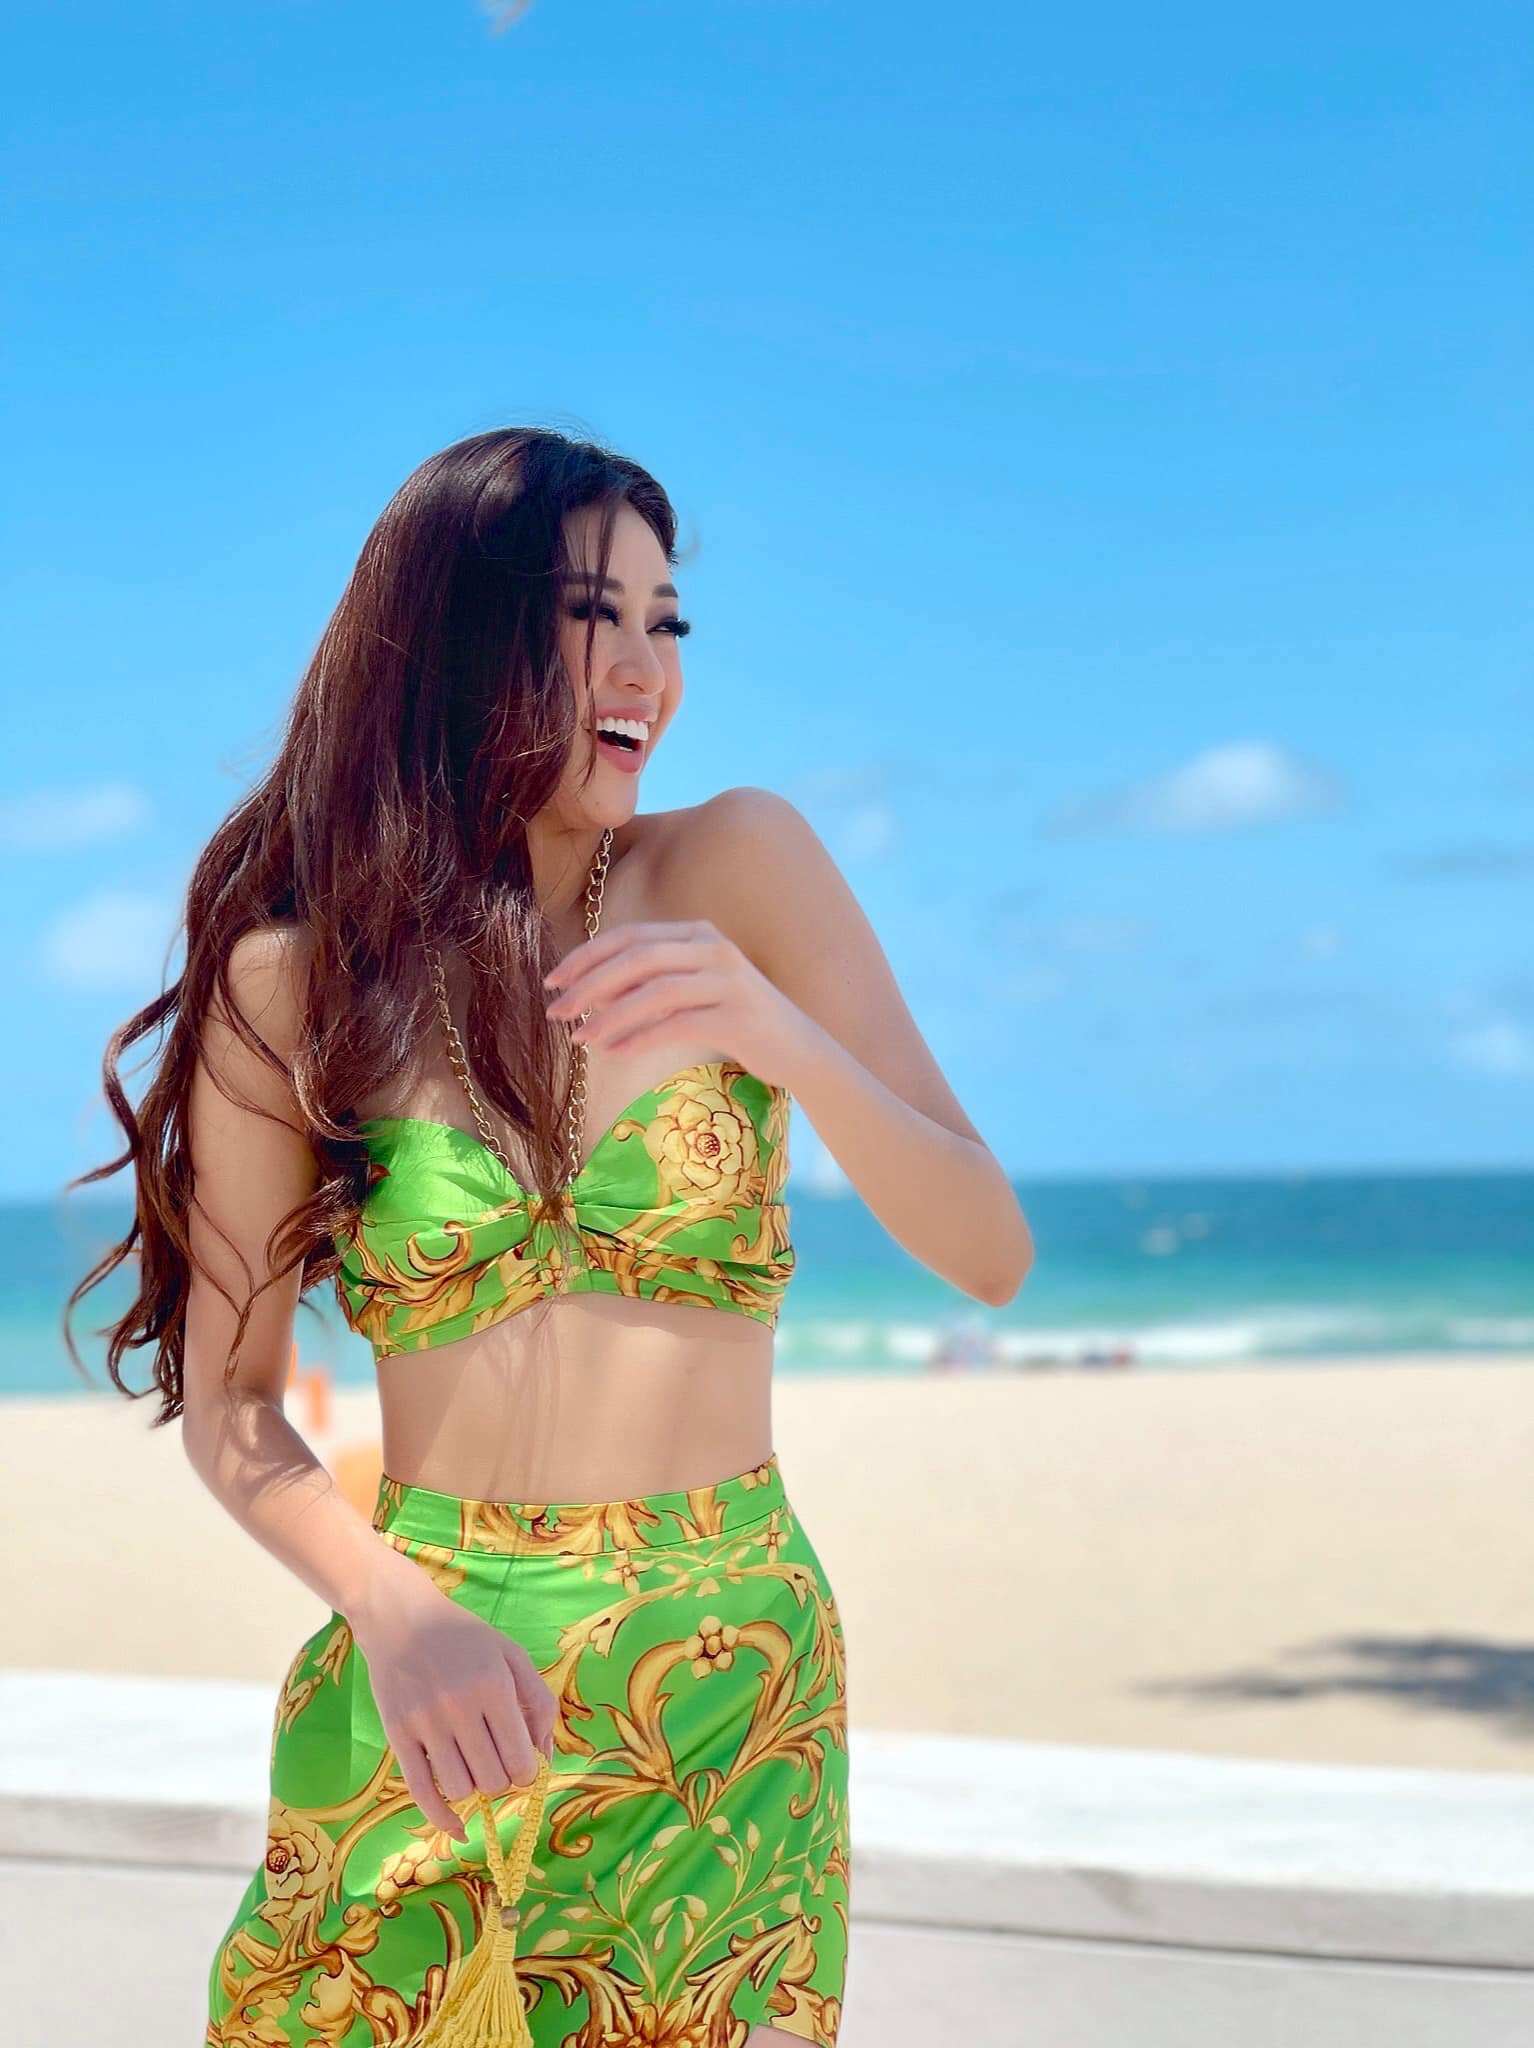 Khánh Vân khoe dáng gợi cảm hết nấc tại Mỹ hậu Miss Universe 2020, nhưng chú ý đổ dồn vào chiếc túi độc lạ - ảnh 8